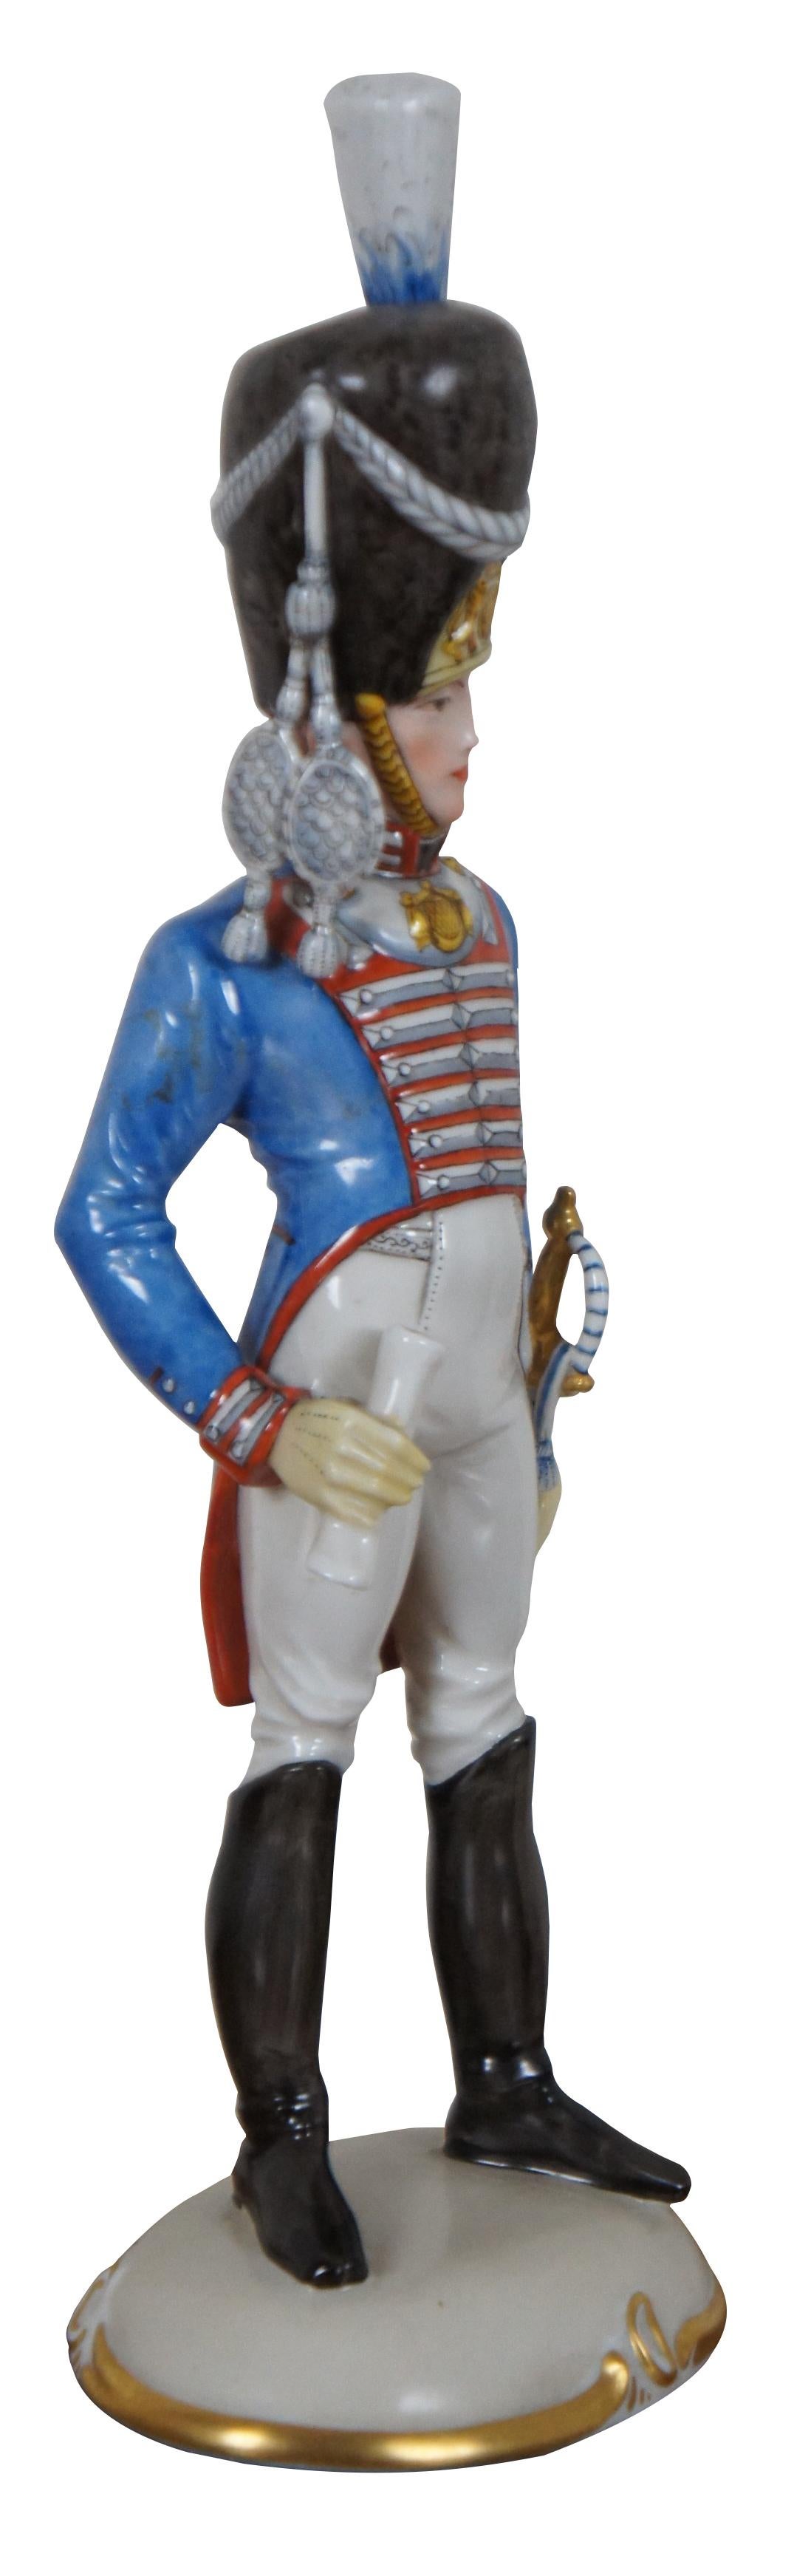 ceramic soldier figurines